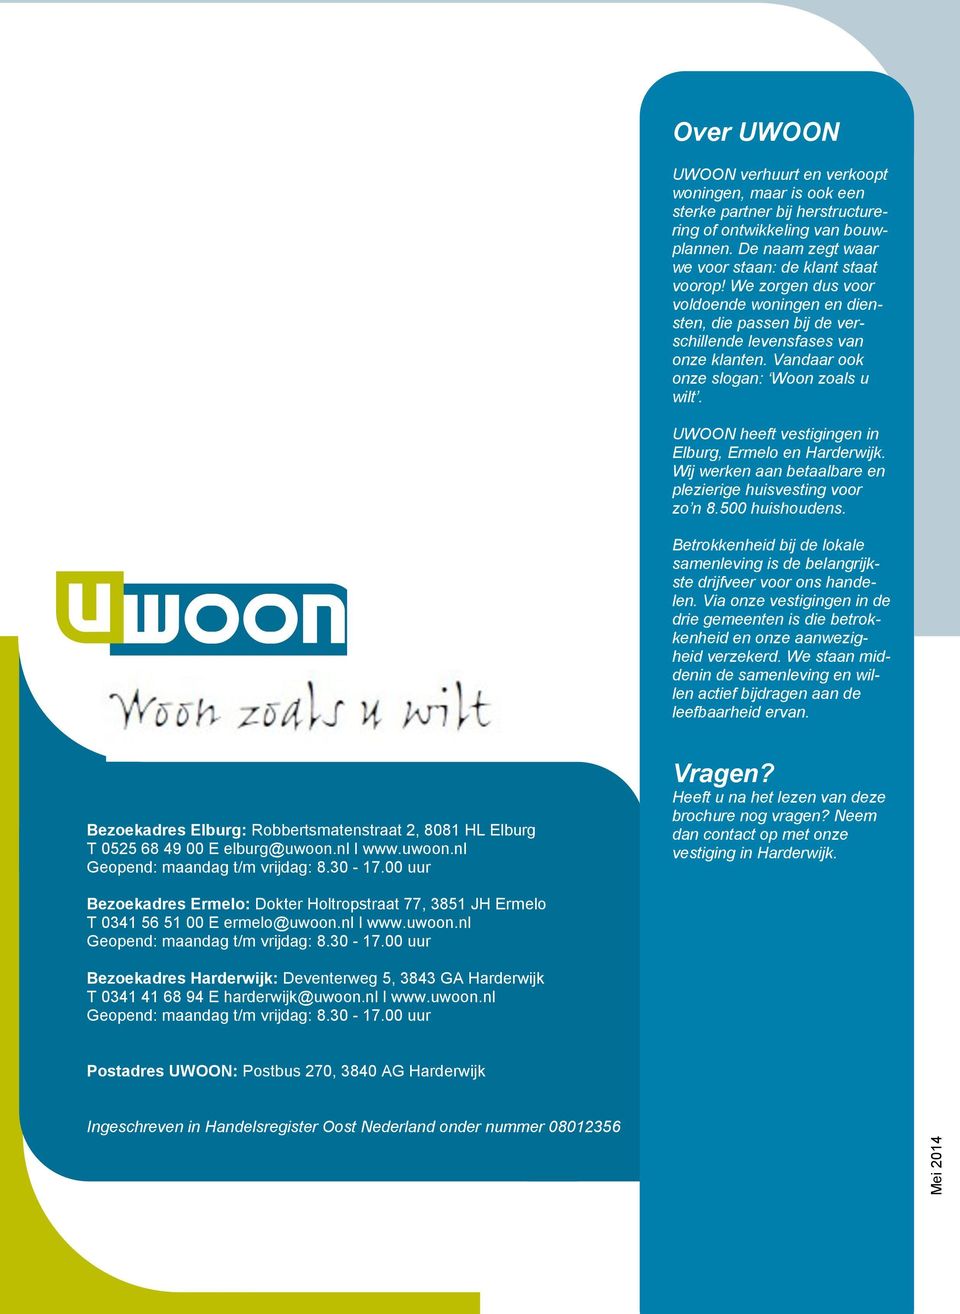 UWOON heeft vestigingen in Elburg, Ermelo en Harderwijk. Wij werken aan betaalbare en plezierige huisvesting voor zo n 8.500 huishoudens.